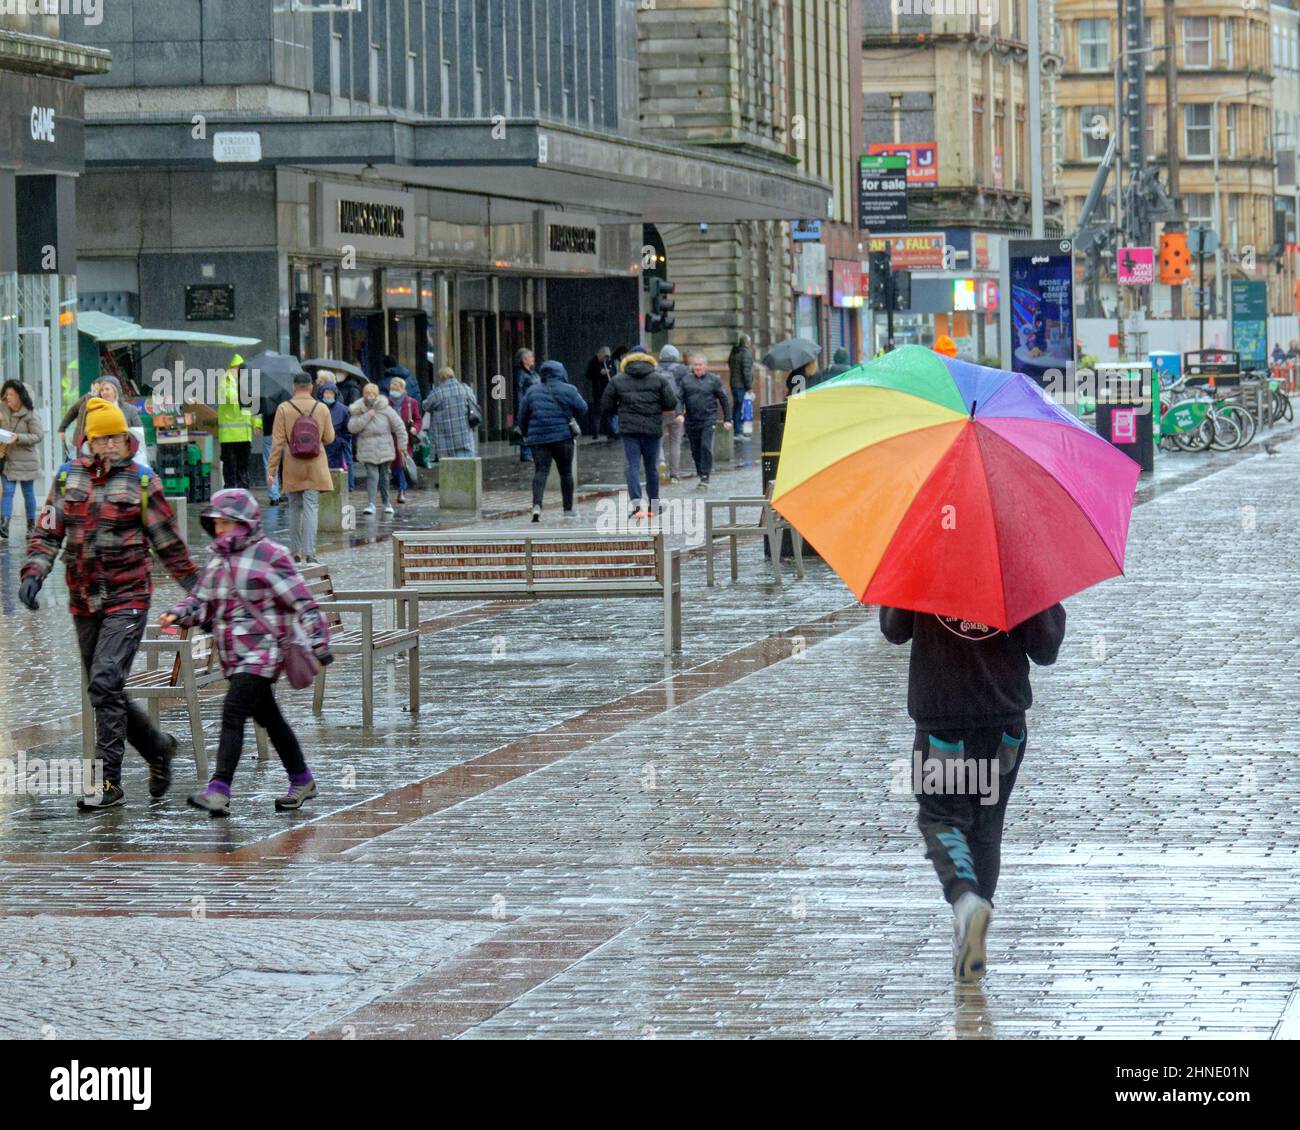 Glasgow, Écosse, Royaume-Uni 16th février 2022. Météo au Royaume-Uni: La pluie est revenue avec de grands vents comme les débuts de Storm Dudley et Storm Eunice balayage dans la ville avec de forts vents plus tard et les inondations sur la grande route de l'Ouest a vu des lignes de trafic provisoirement se déplacer à travers l'inondation . Crédit Gerard Ferry/Alay Live News Banque D'Images